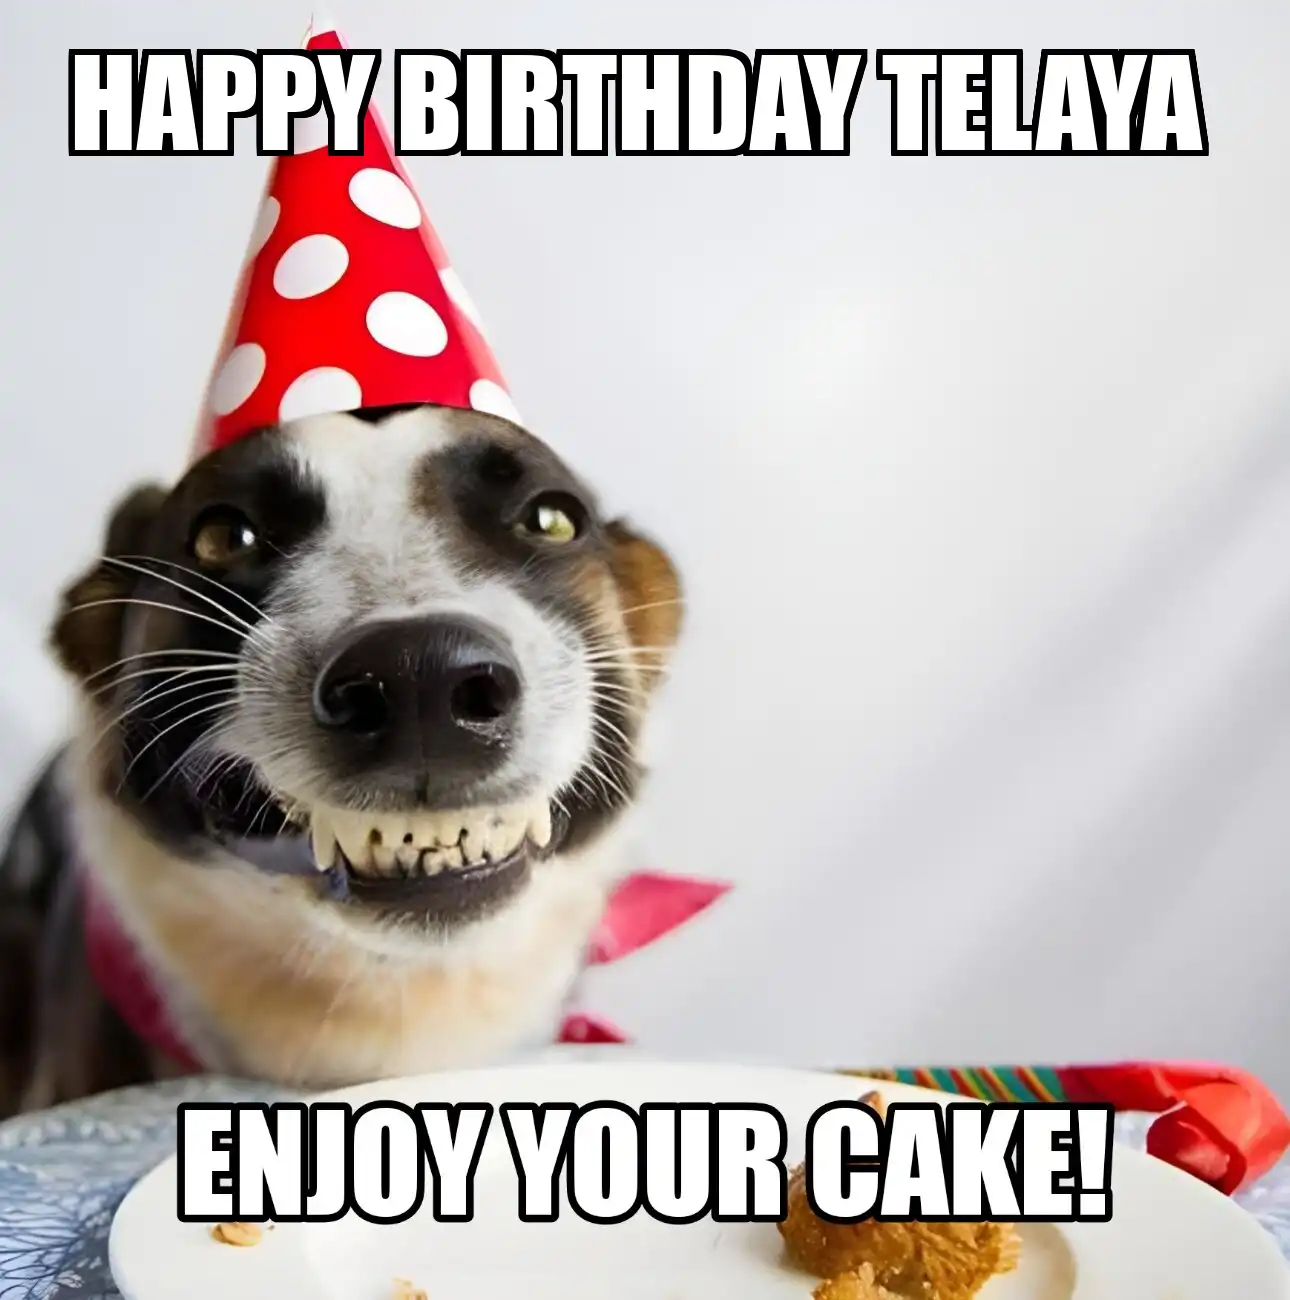 Happy Birthday Telaya Enjoy Your Cake Dog Meme